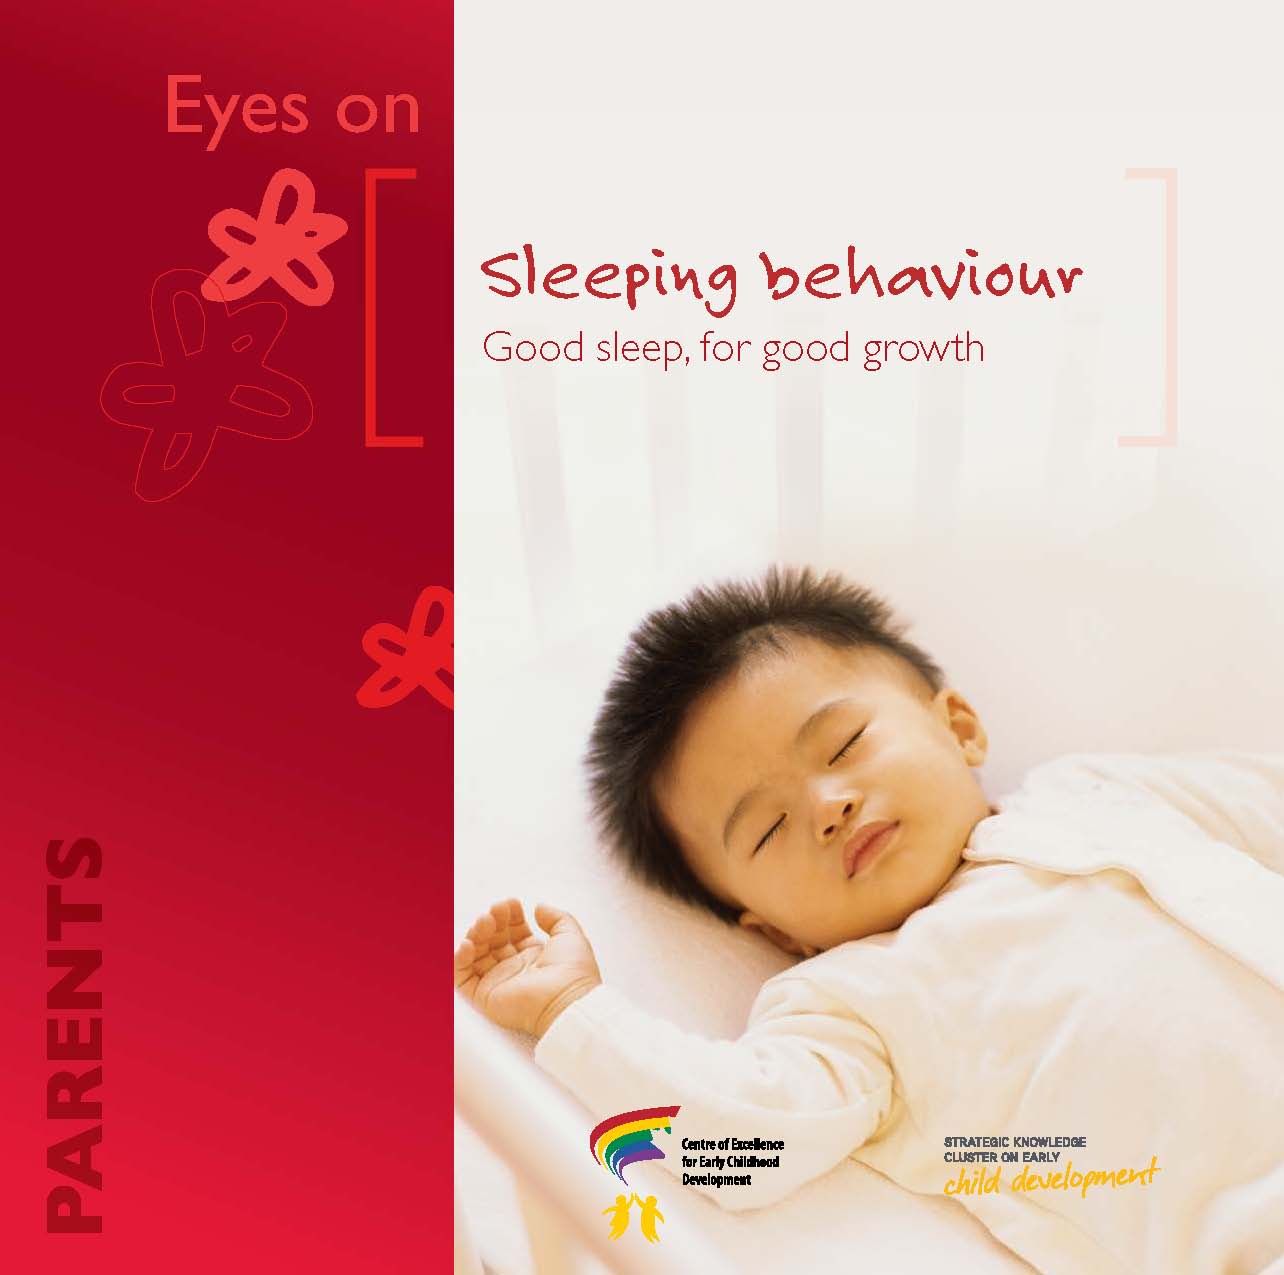 Sleeping behaviour: good sleep, for good growth